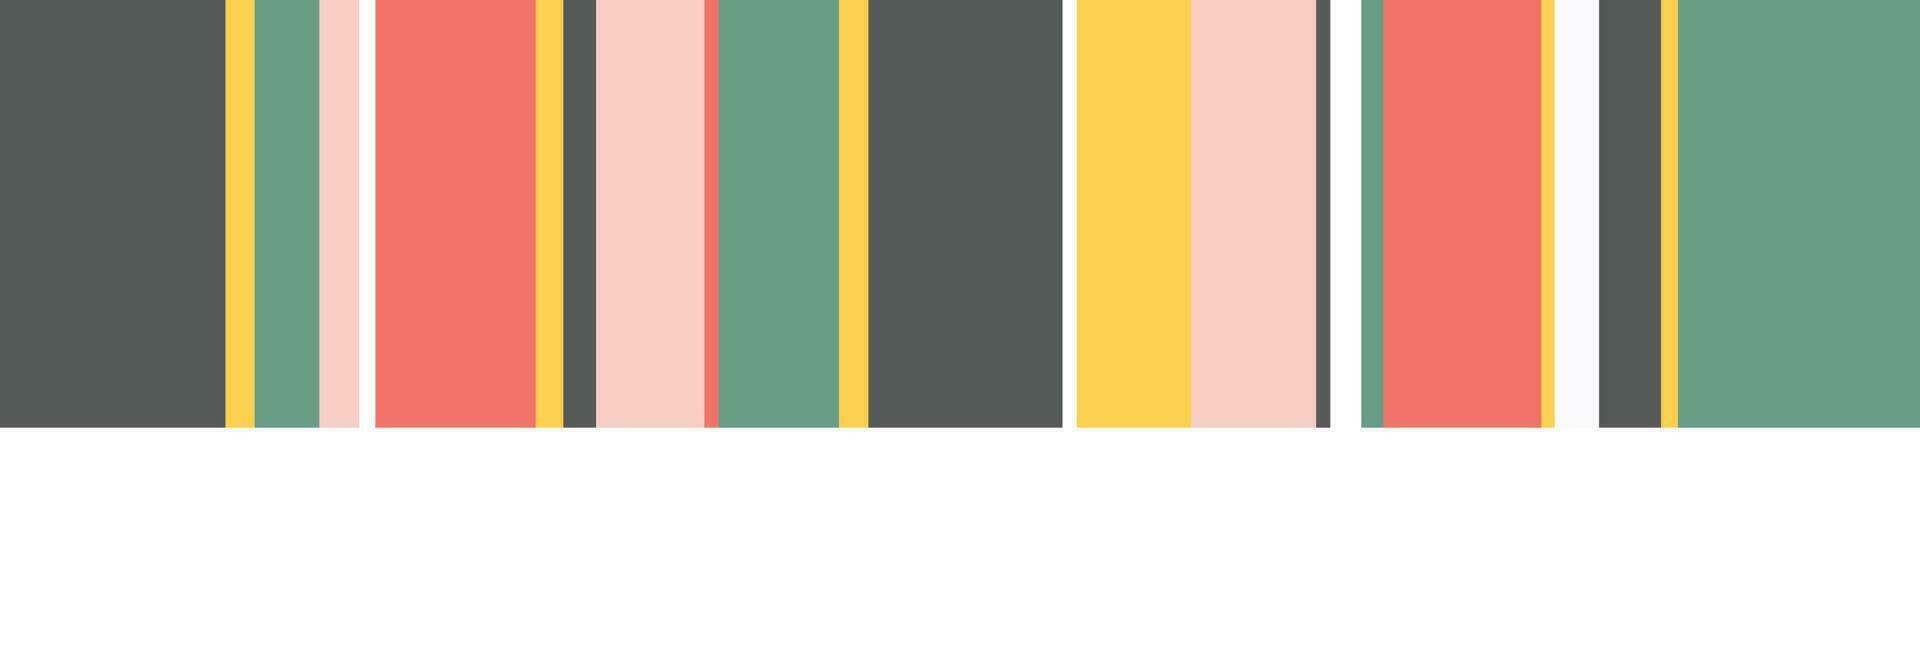 kleur plons abstract achtergrond voor ontwerp. vector